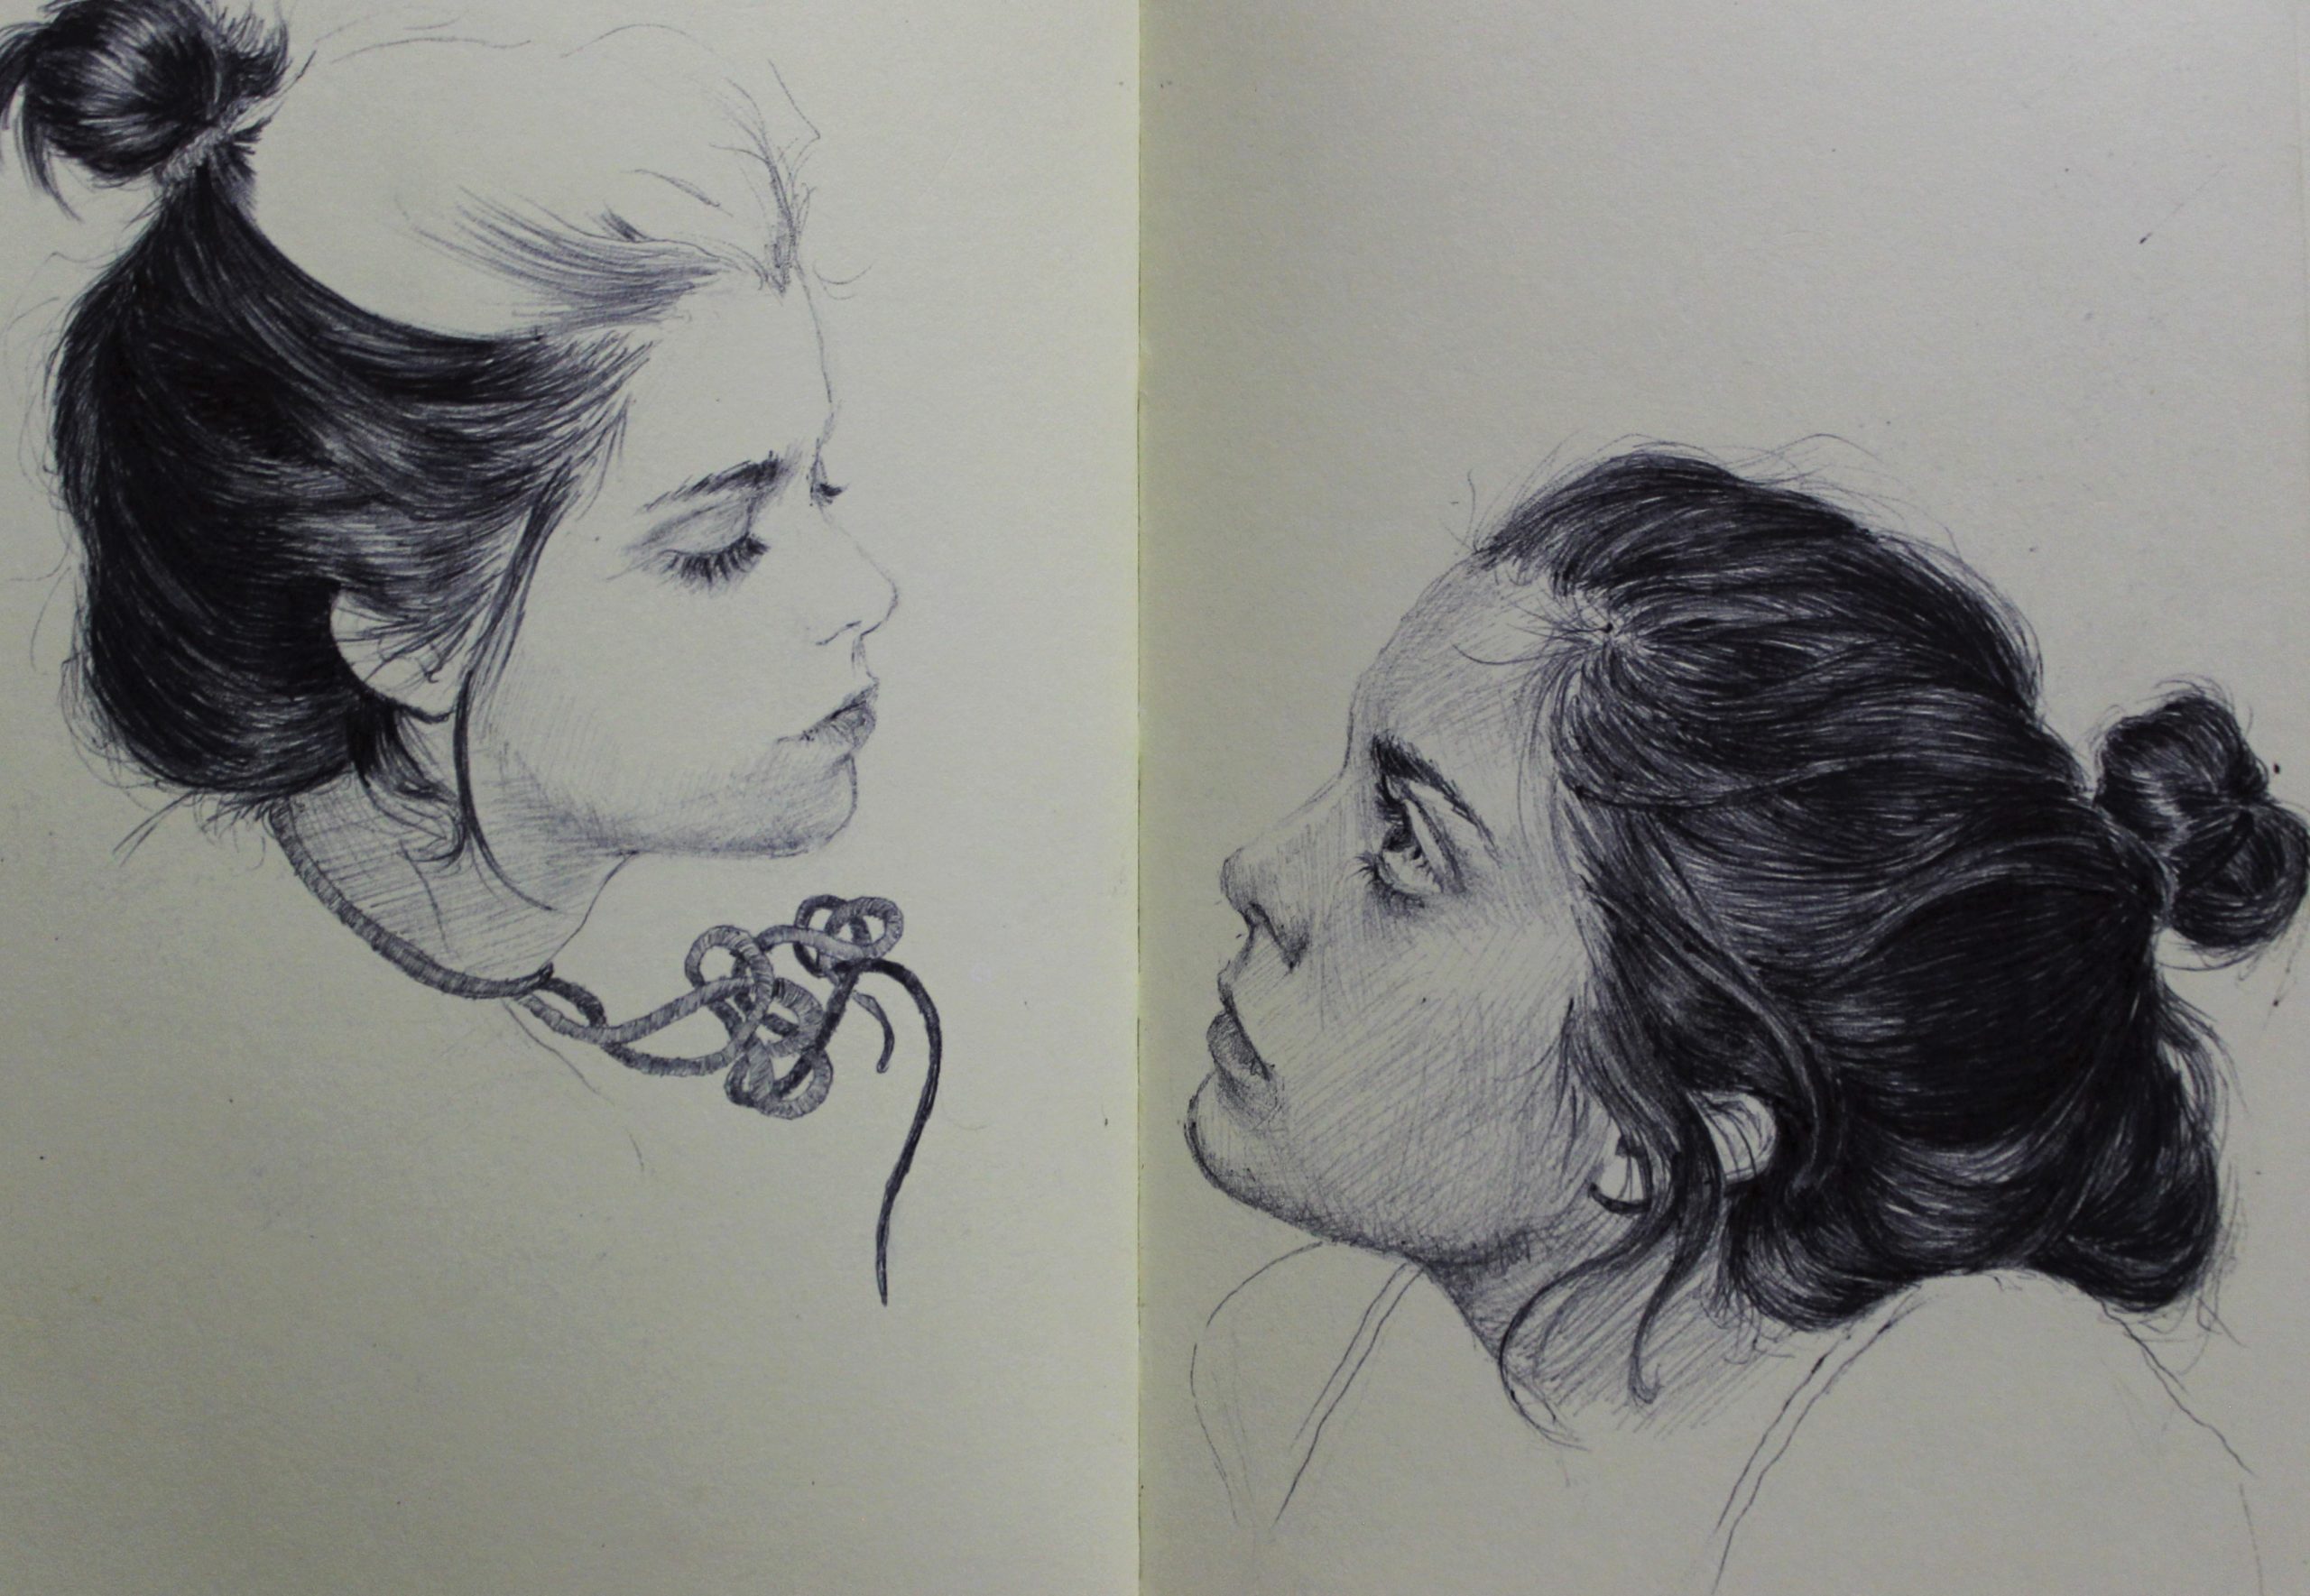 Portrait drawings